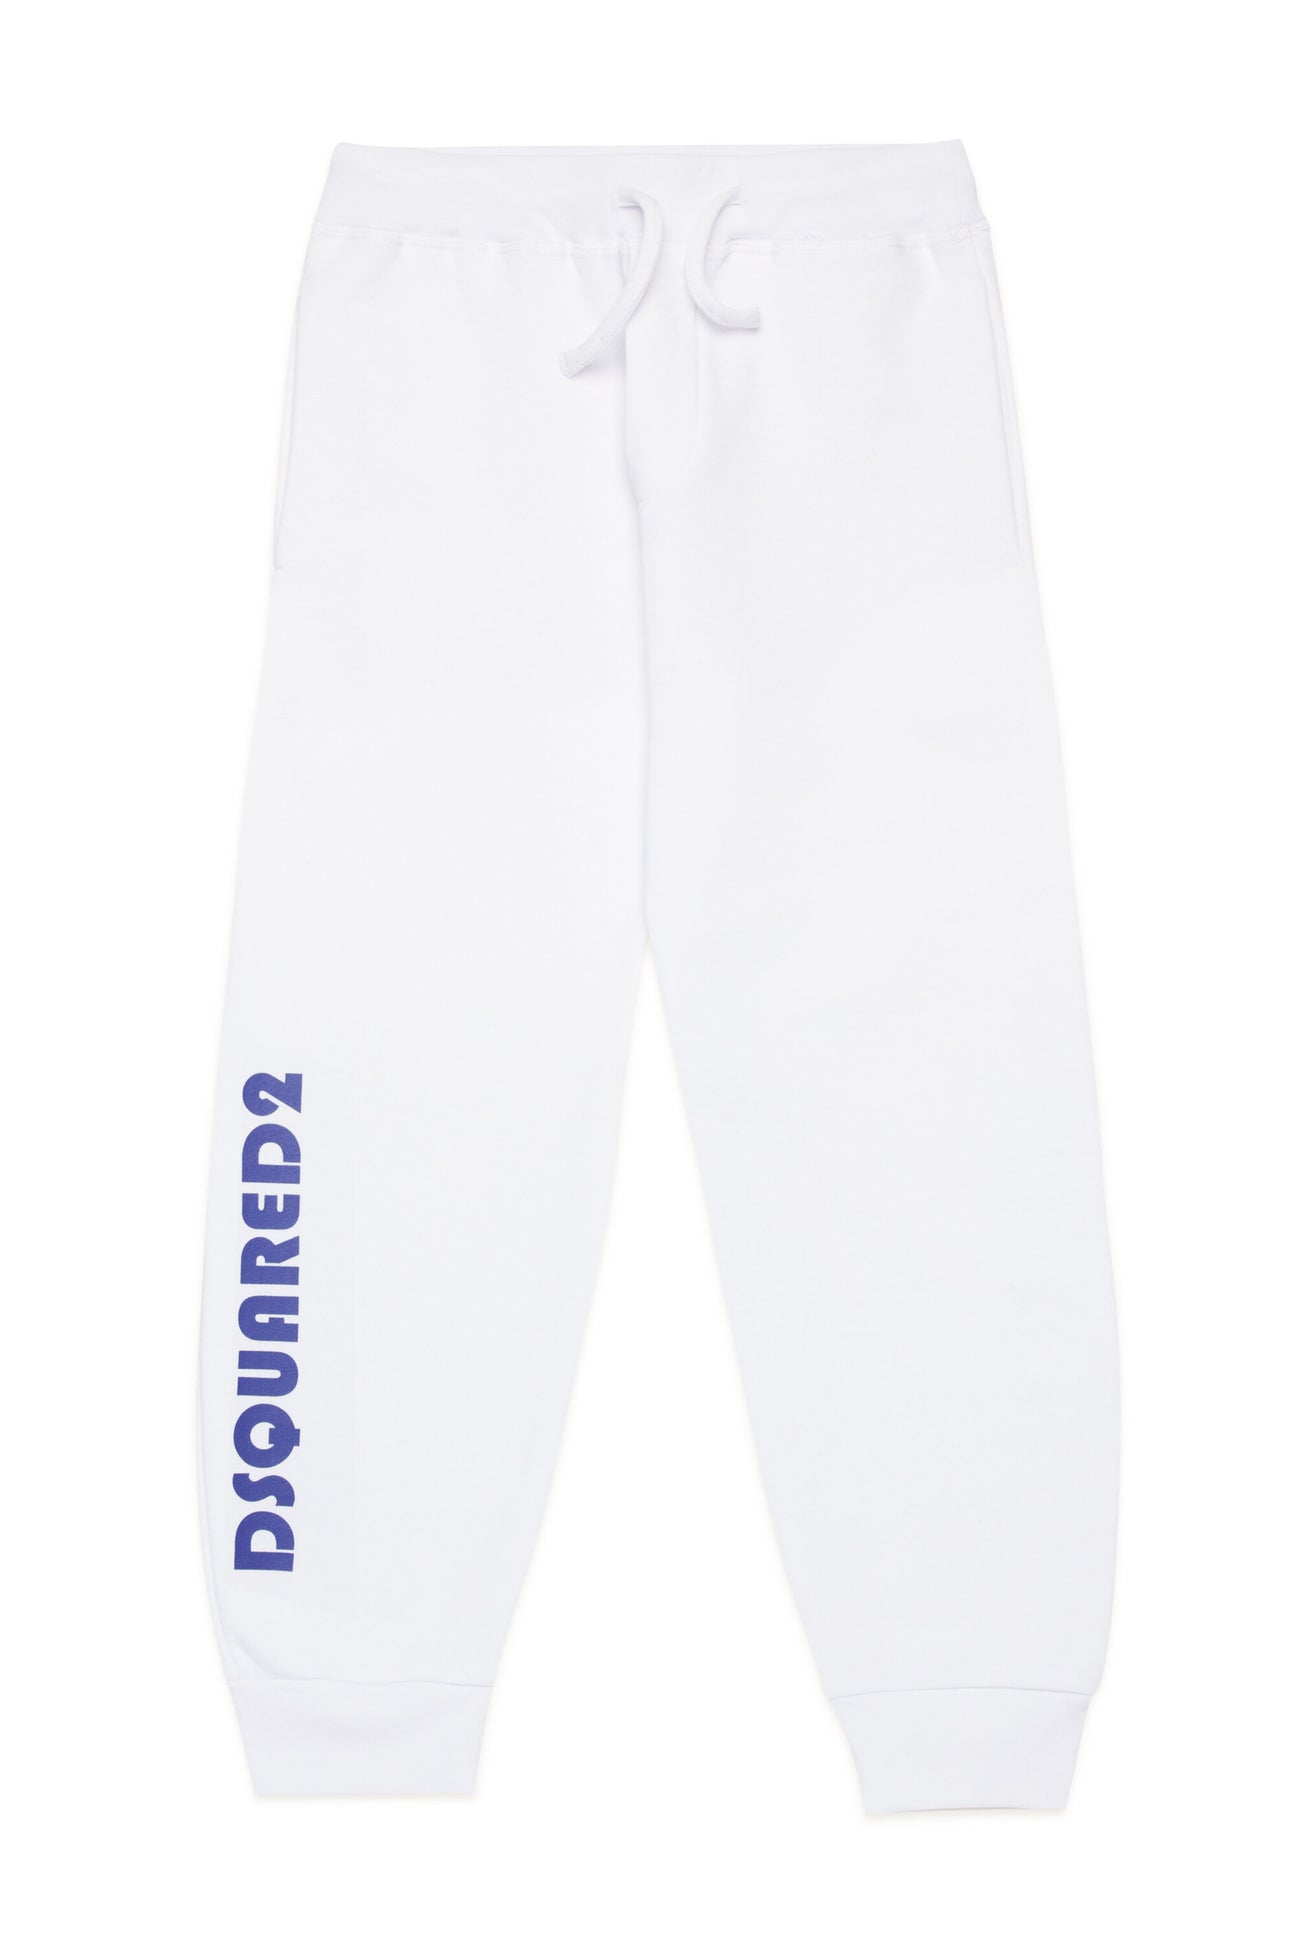 Pantalones deportivos en chándal con logotipo en mayúsculas 